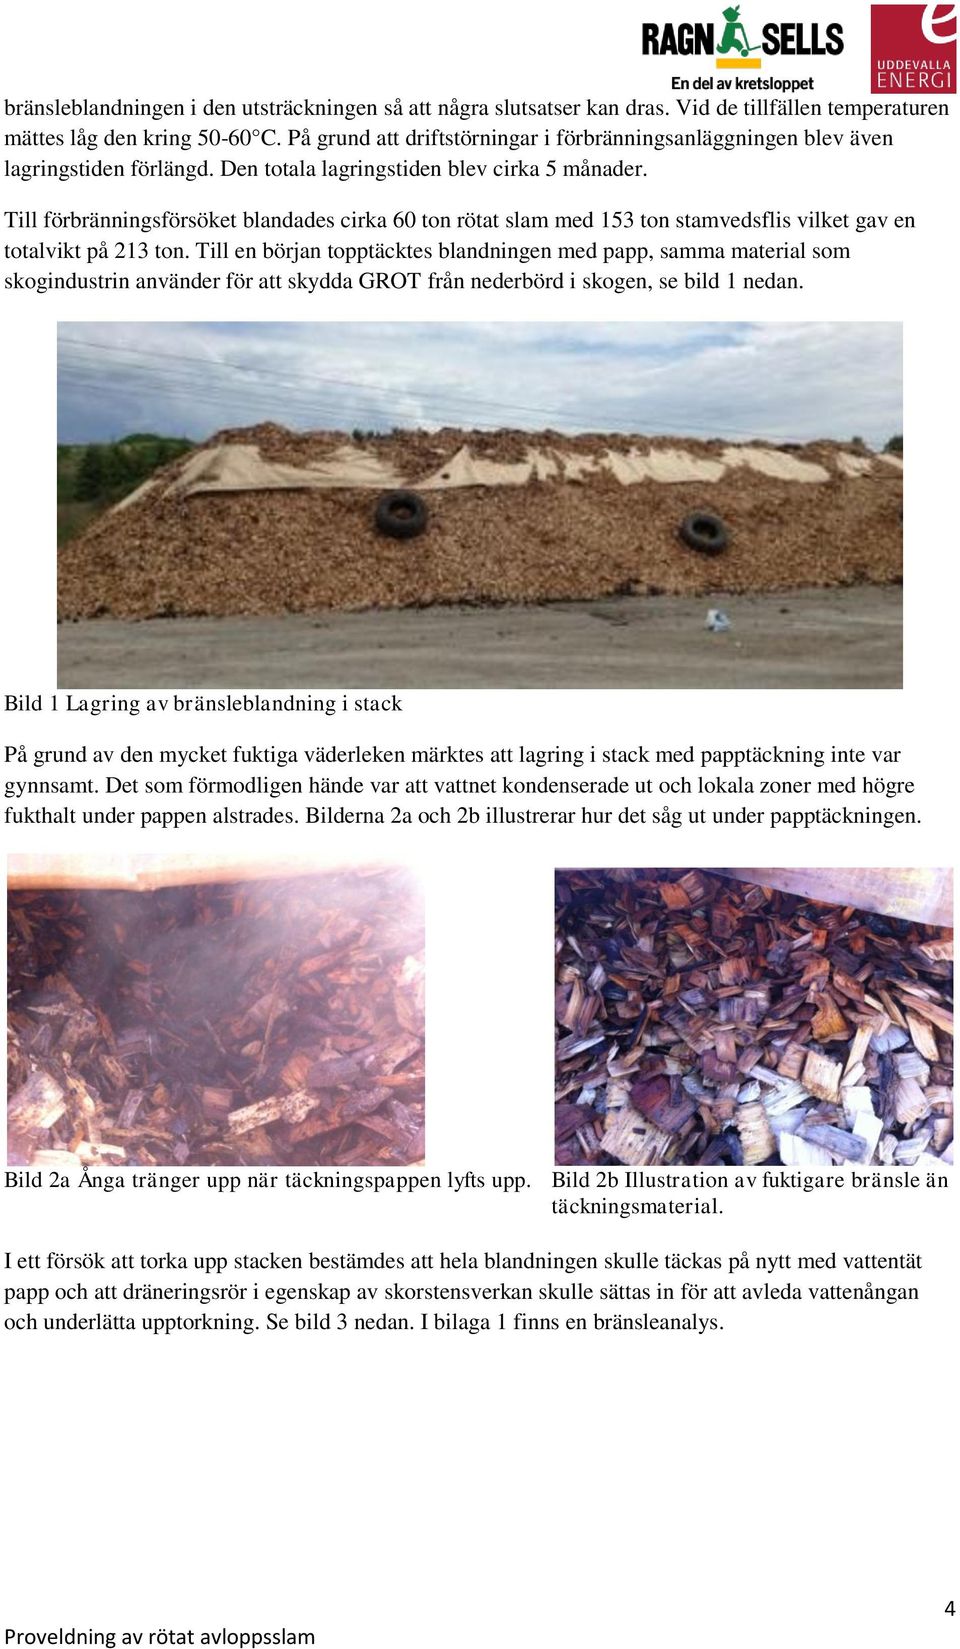 Till förbränningsförsöket blandades cirka 60 ton rötat slam med 153 ton stamvedsflis vilket gav en totalvikt på 213 ton.